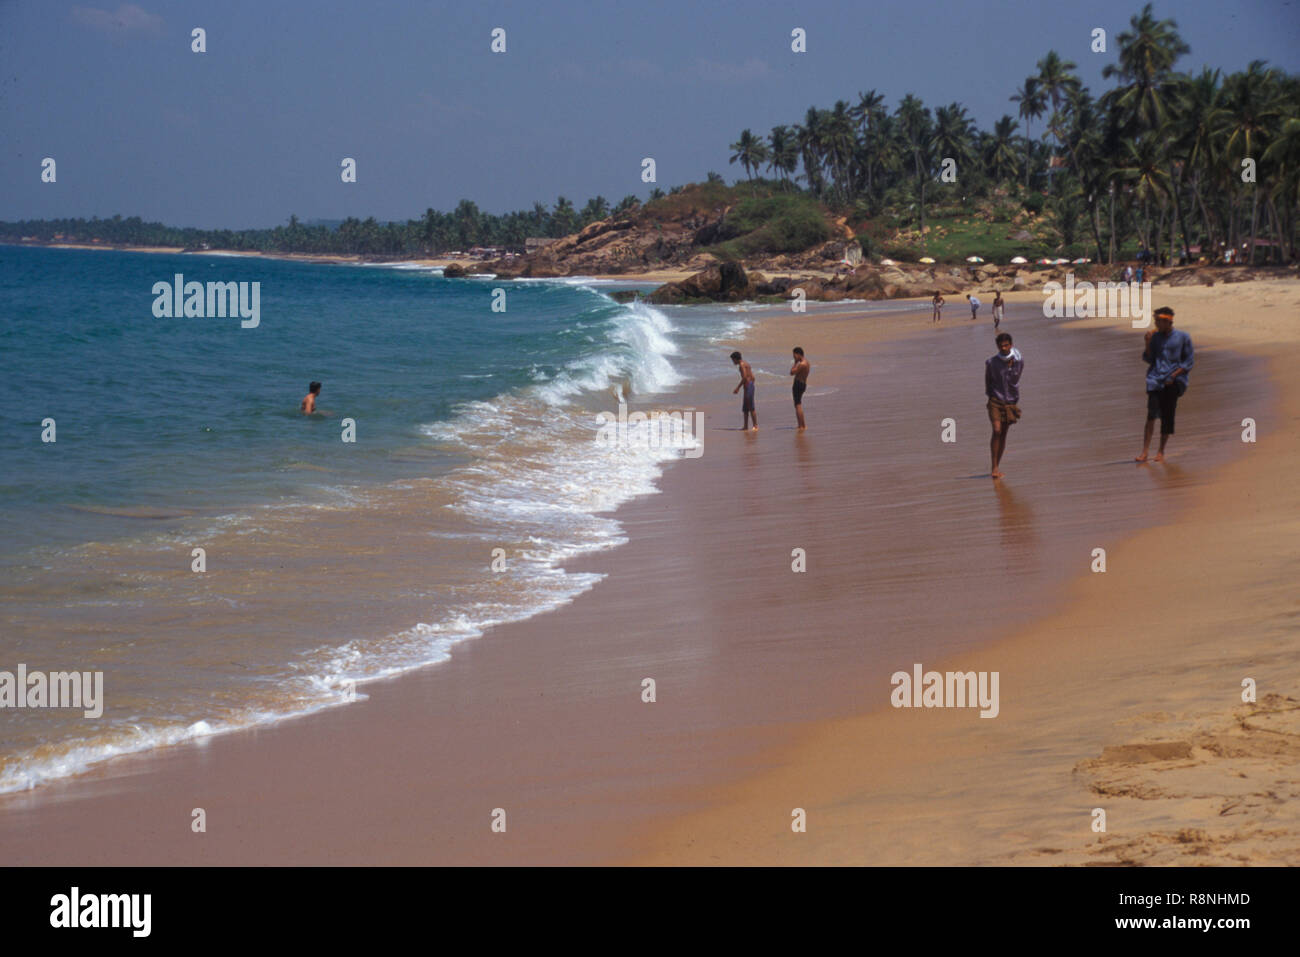 Kolam l'un des plus pittoresque plage de sable étirée , Kerala, Inde Banque D'Images